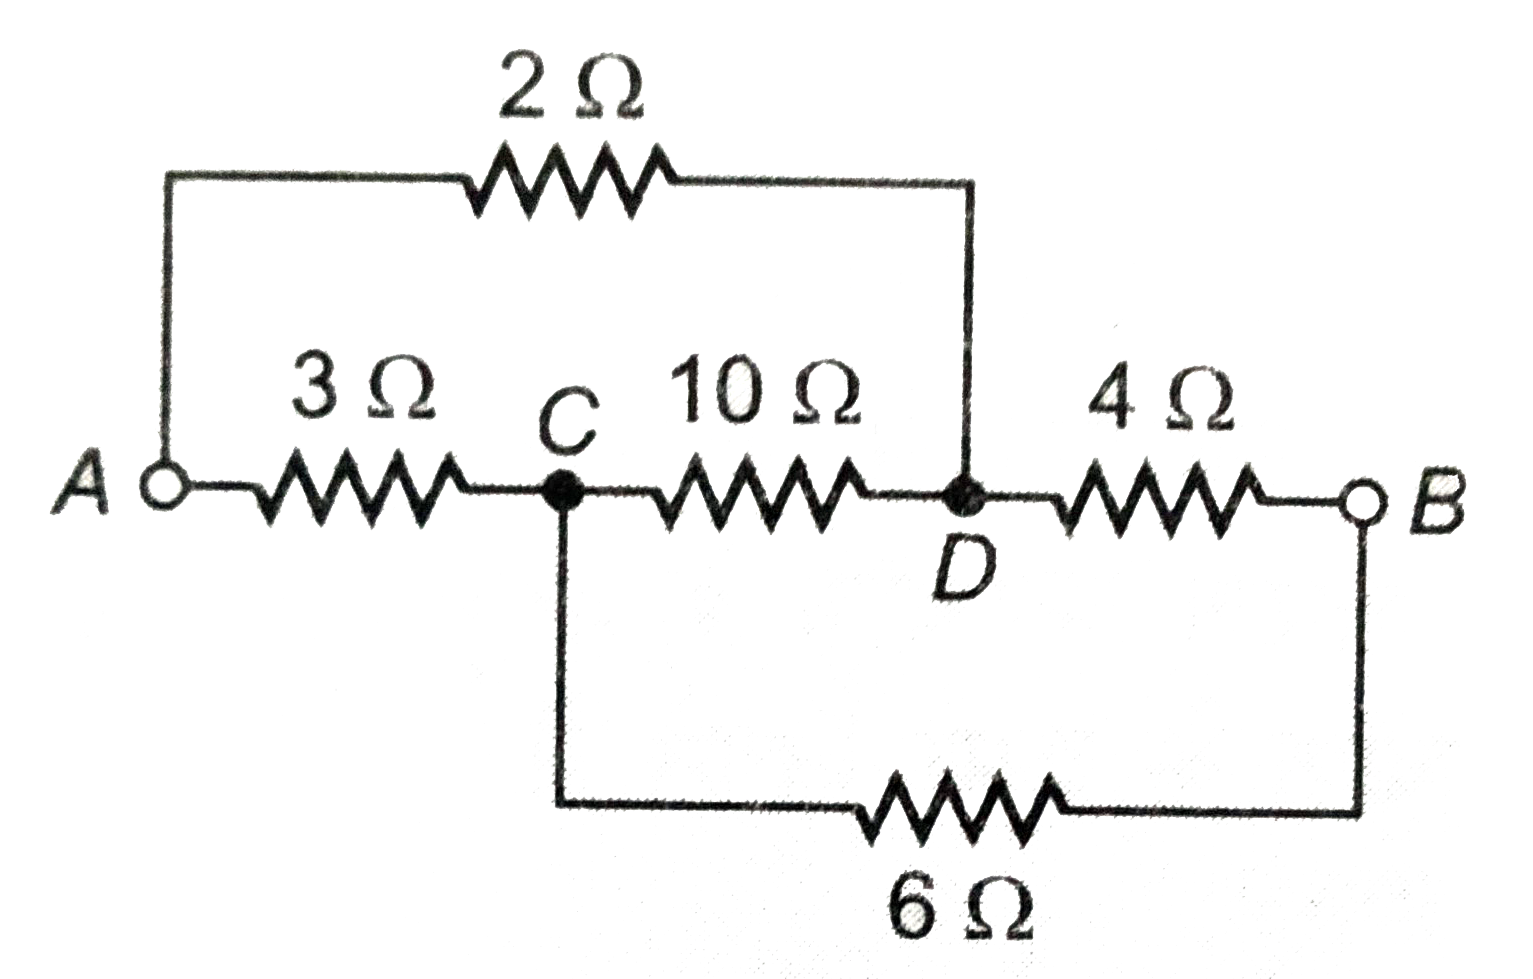 संलग्न चित्र में बिंदुओं A व B के बीच तुल्य प्रतिरोध ज्ञात कीजिए । यदि A व B के बीच 4 वोल्ट व 0.4 ओम की बैटरी जोड़ दे तो विभिन्न प्रतिरोधों में धाराएं ज्ञात कीजिये ।